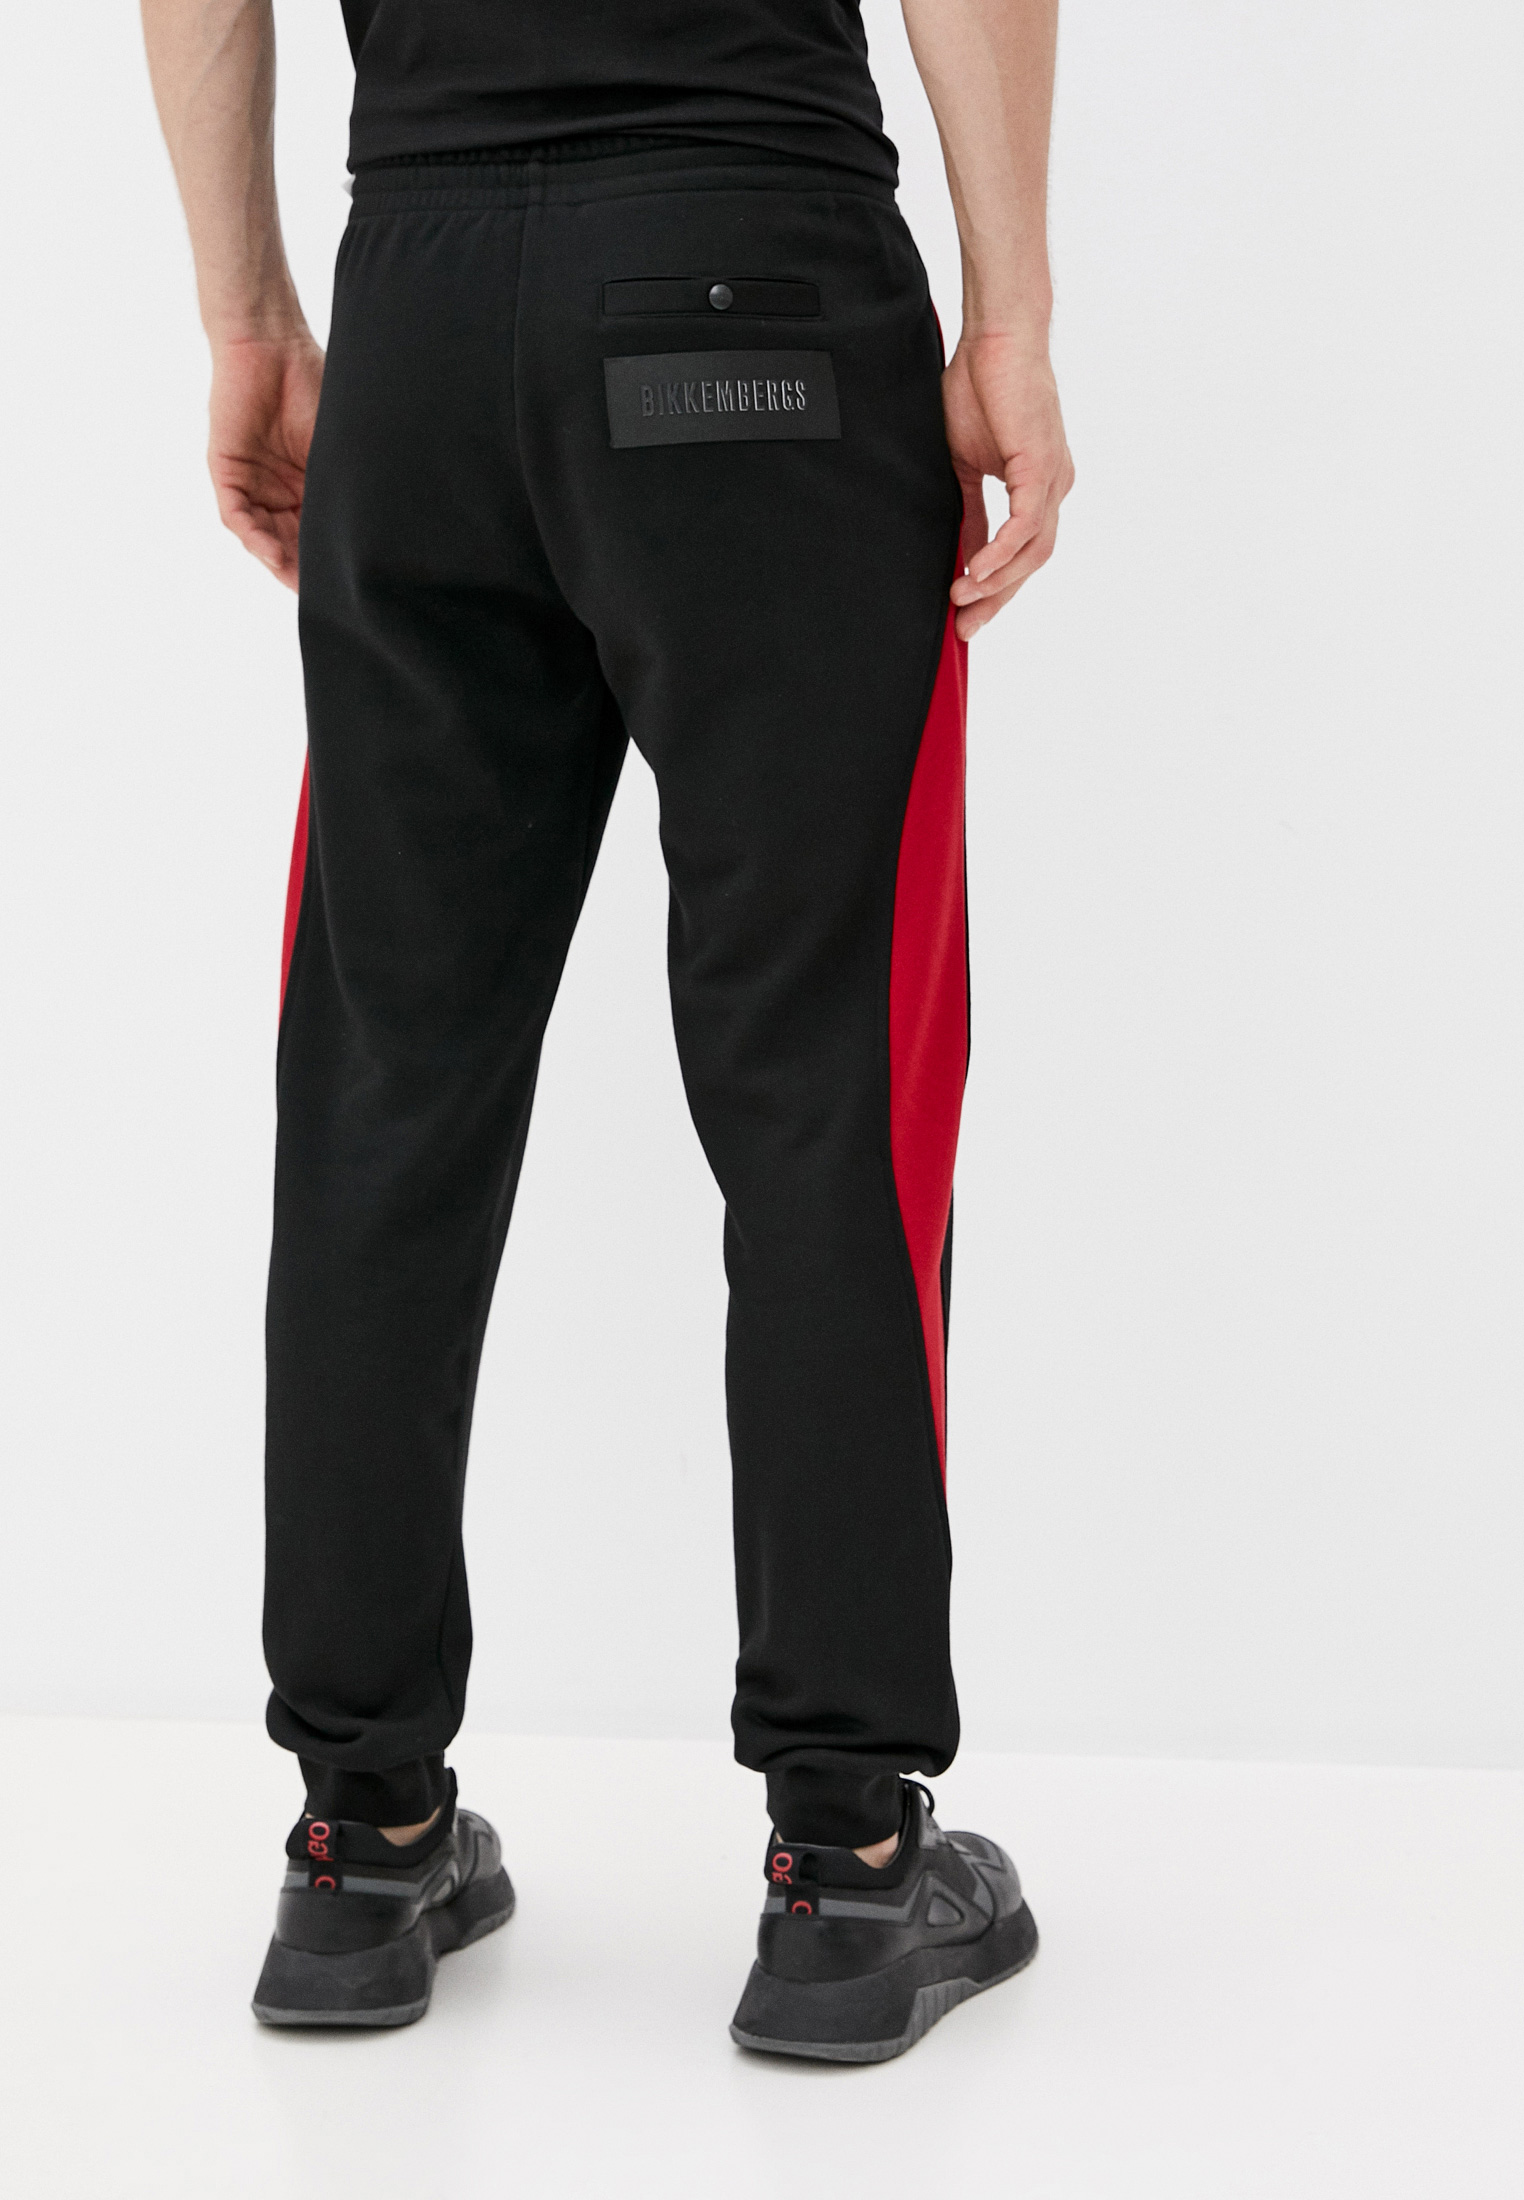 Мужские спортивные брюки Bikkembergs (Биккембергс) C 1 153 00 M 4225: изображение 4